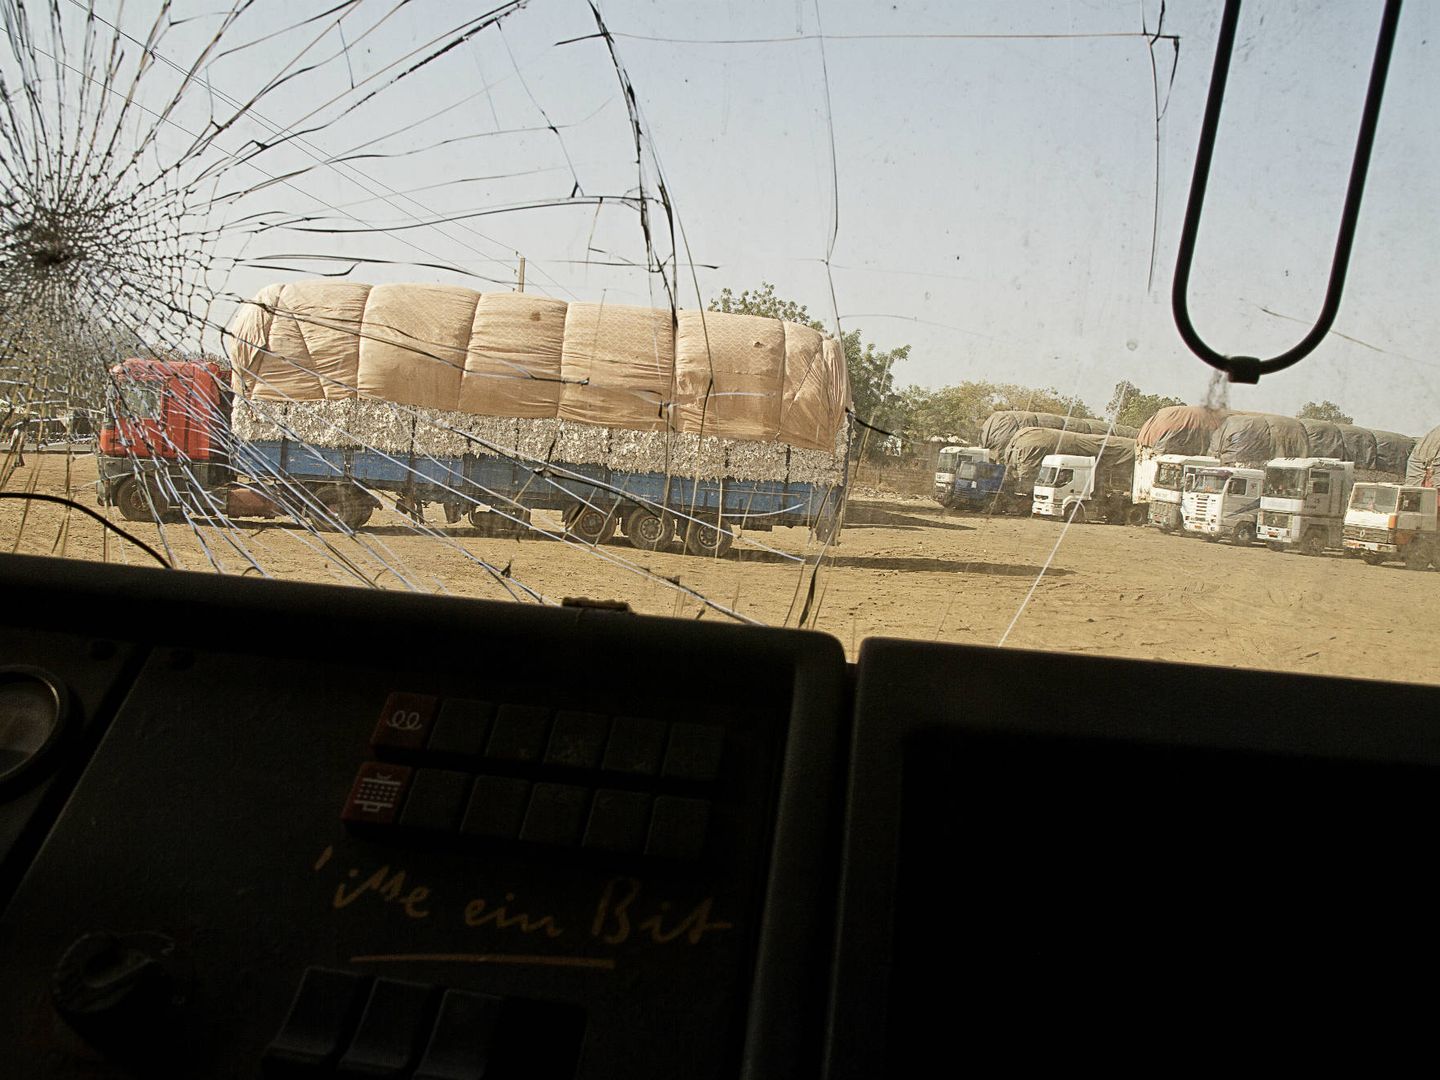 Camiones aparcados delante de la planta de procesamiento de algodón, vistos desde el parabrisas agrietado de otro vehículo (K. Gómez)